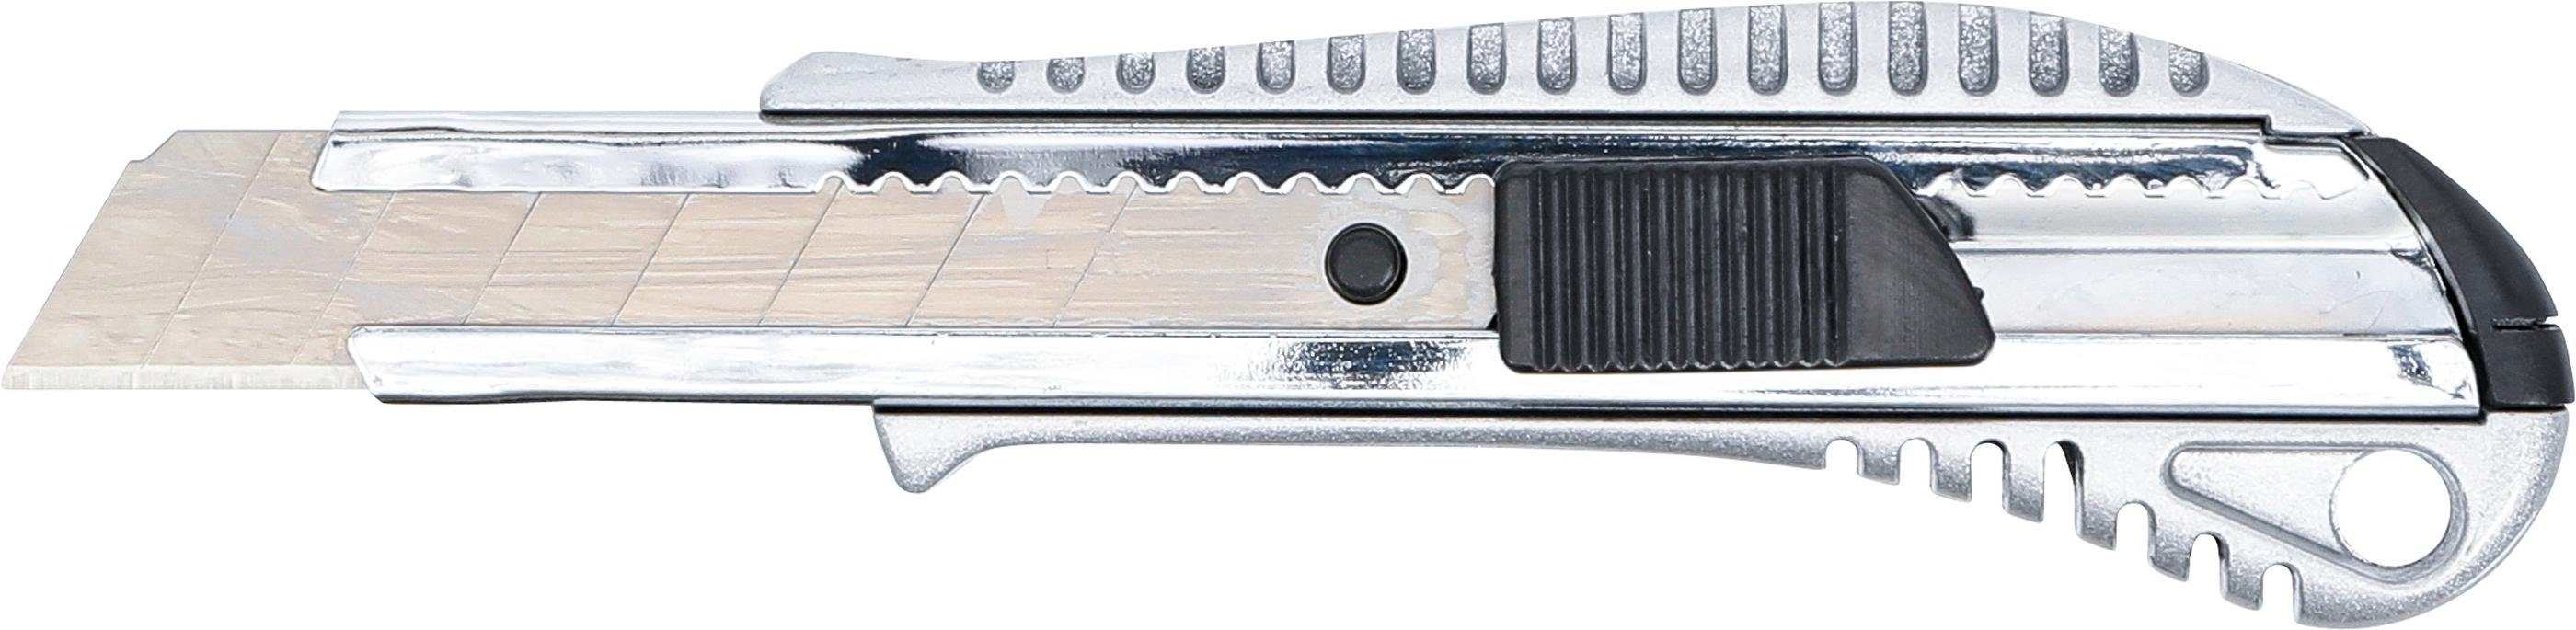 18 technic mm Cuttermesser BGS Abbrechmesser, Klingenbreite